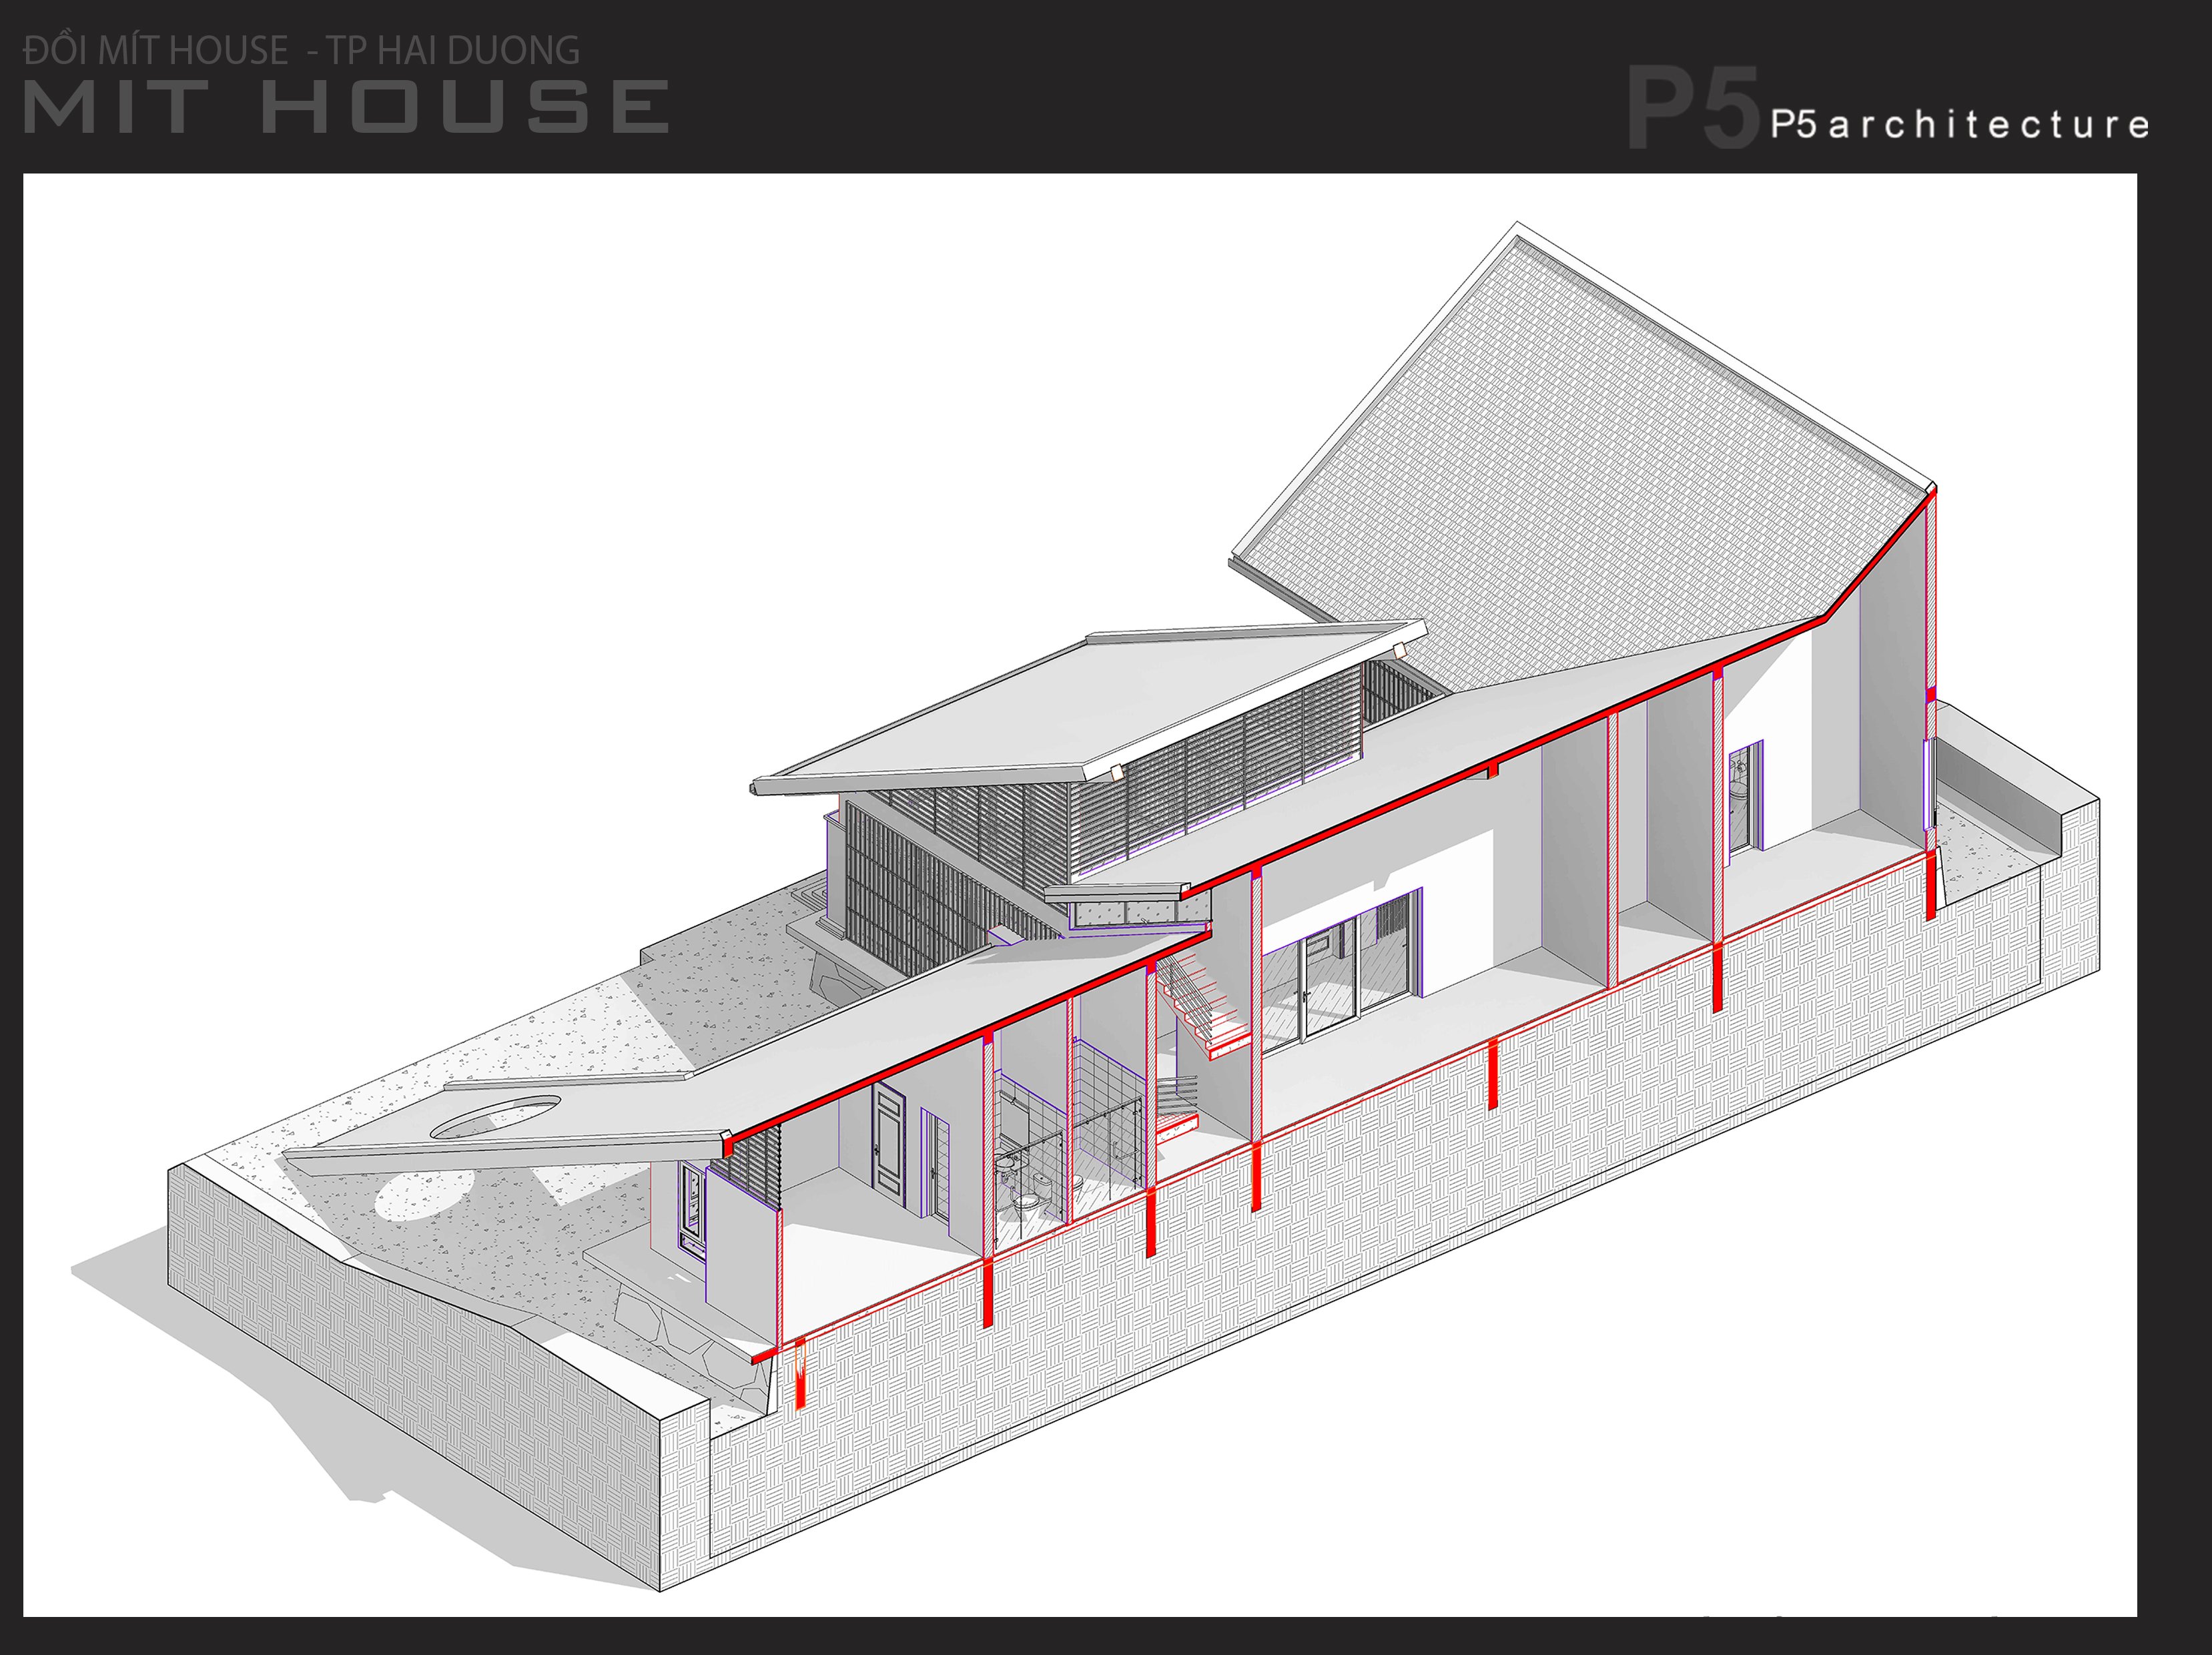 Thiết kế Nhà tại Hải Dương MIT HOUSE 1592840190 3